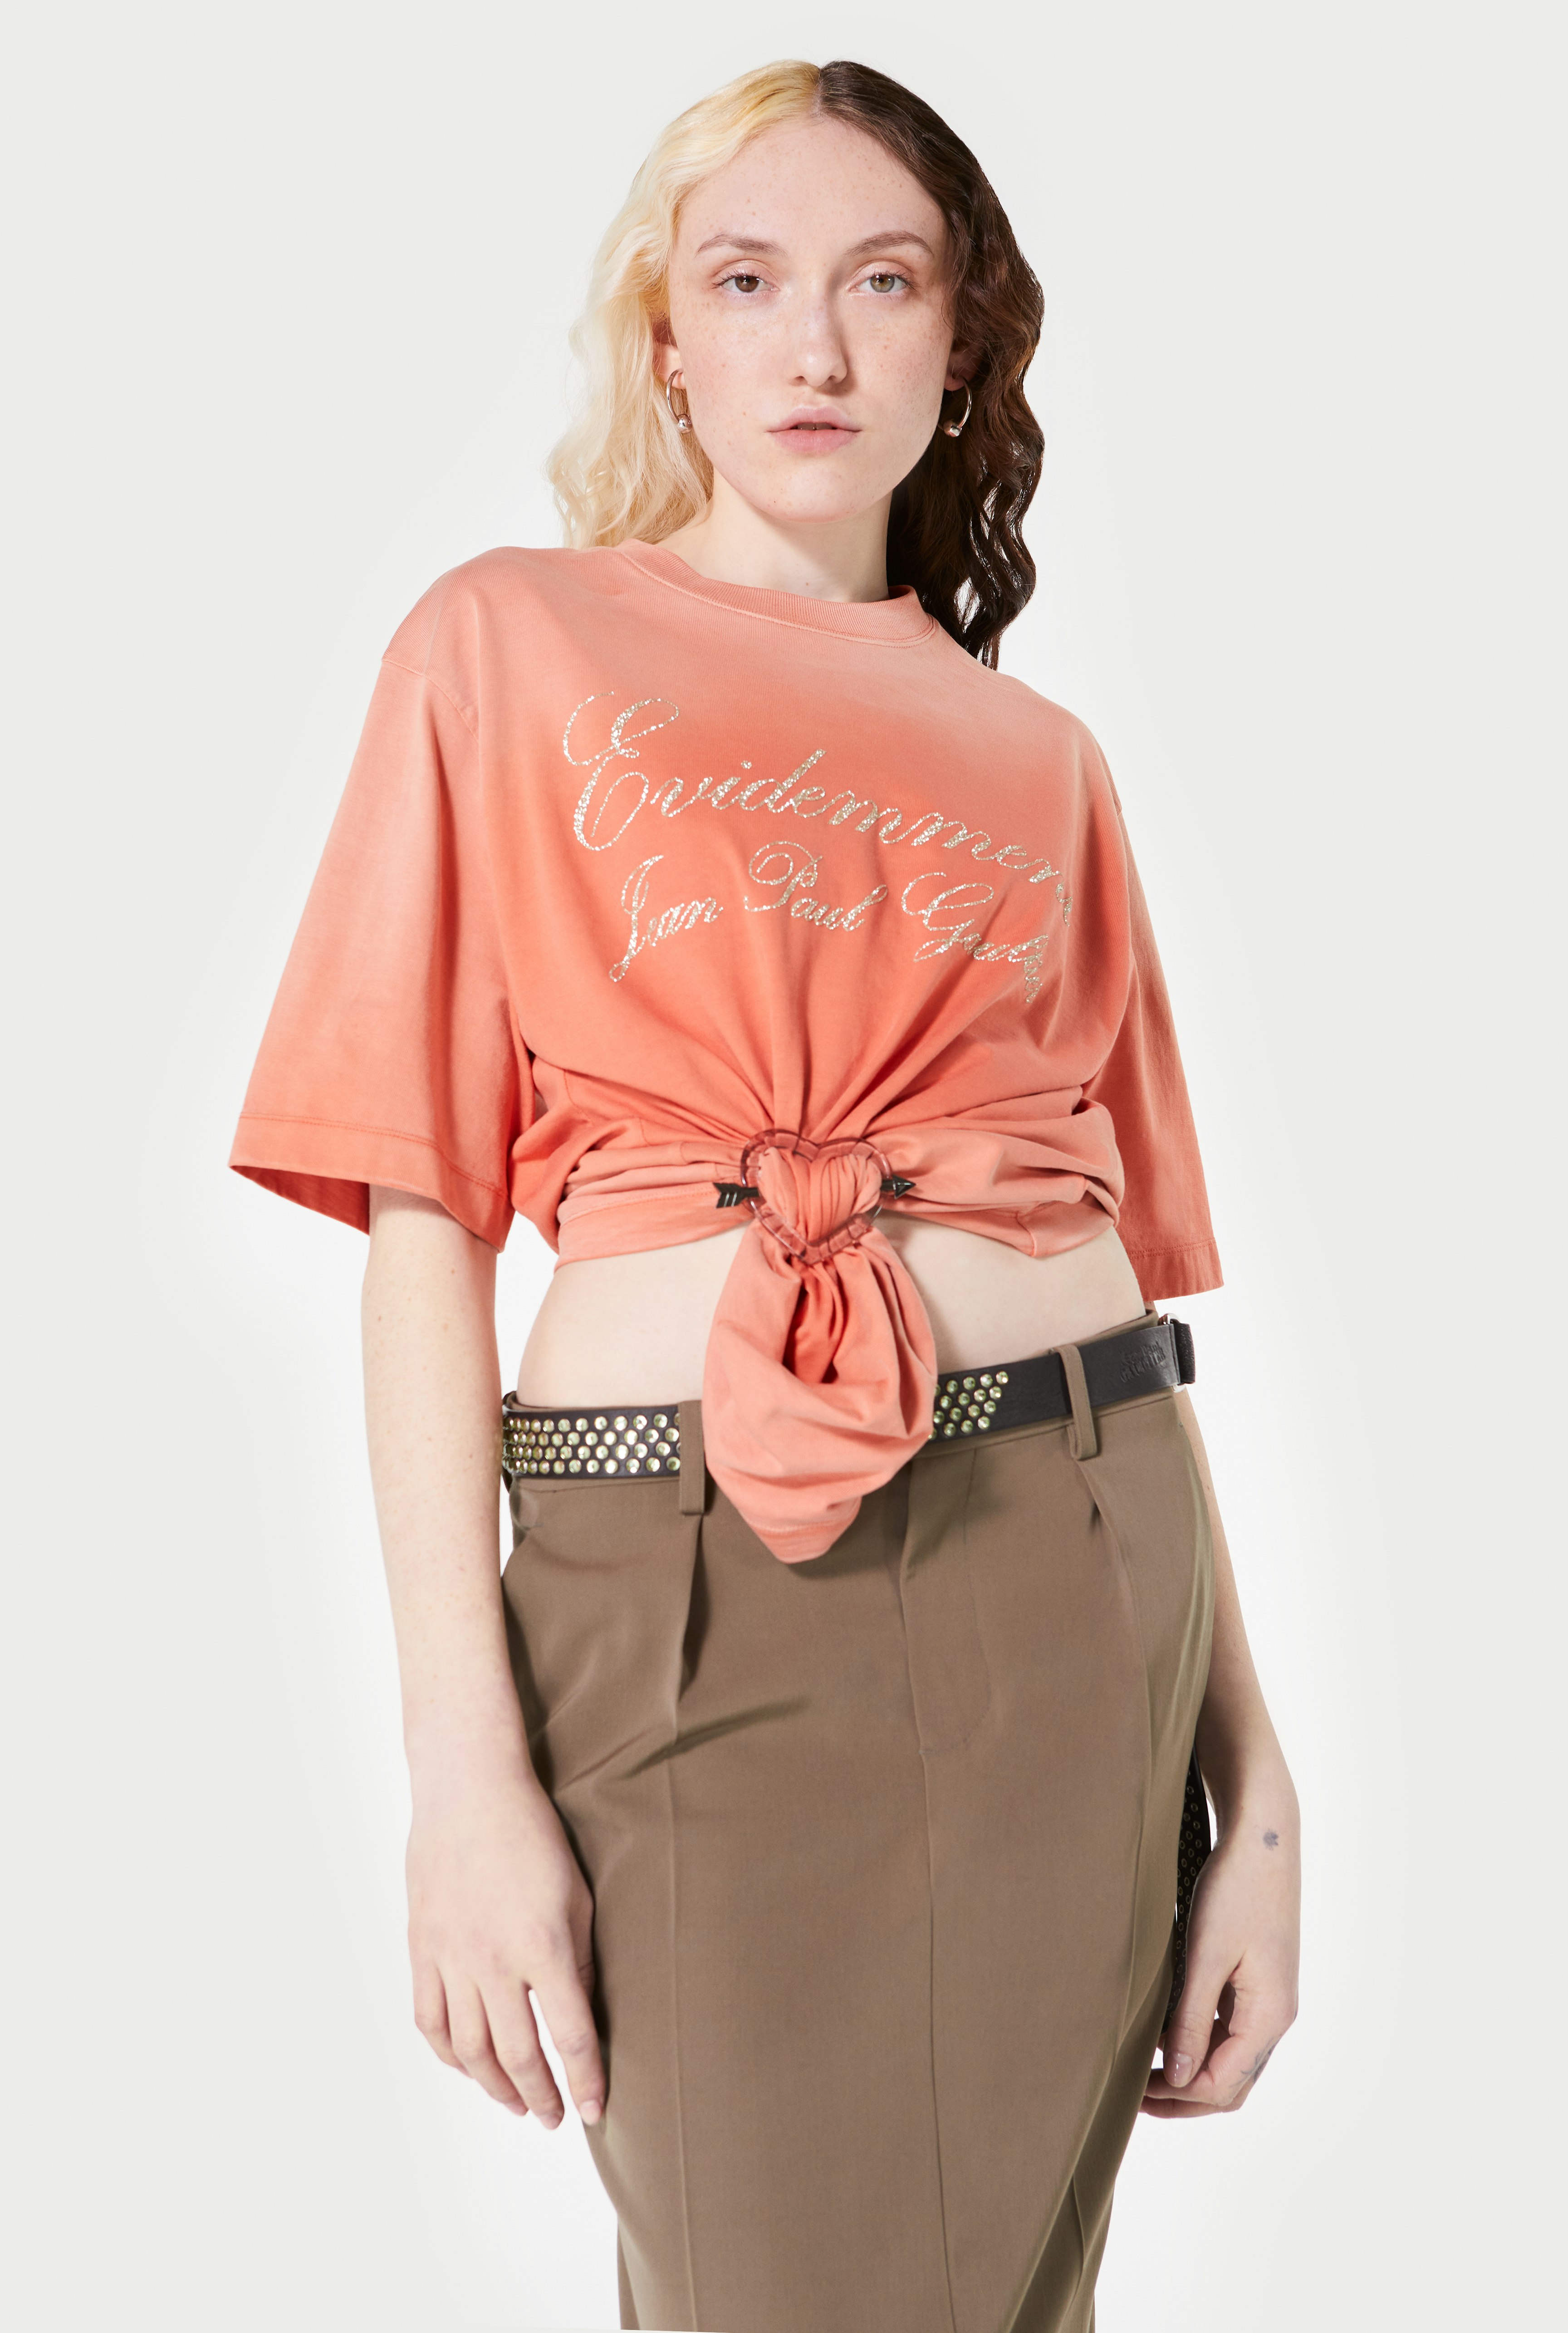 The Orange Évidemment T-Shirt Jean Paul Gaultier